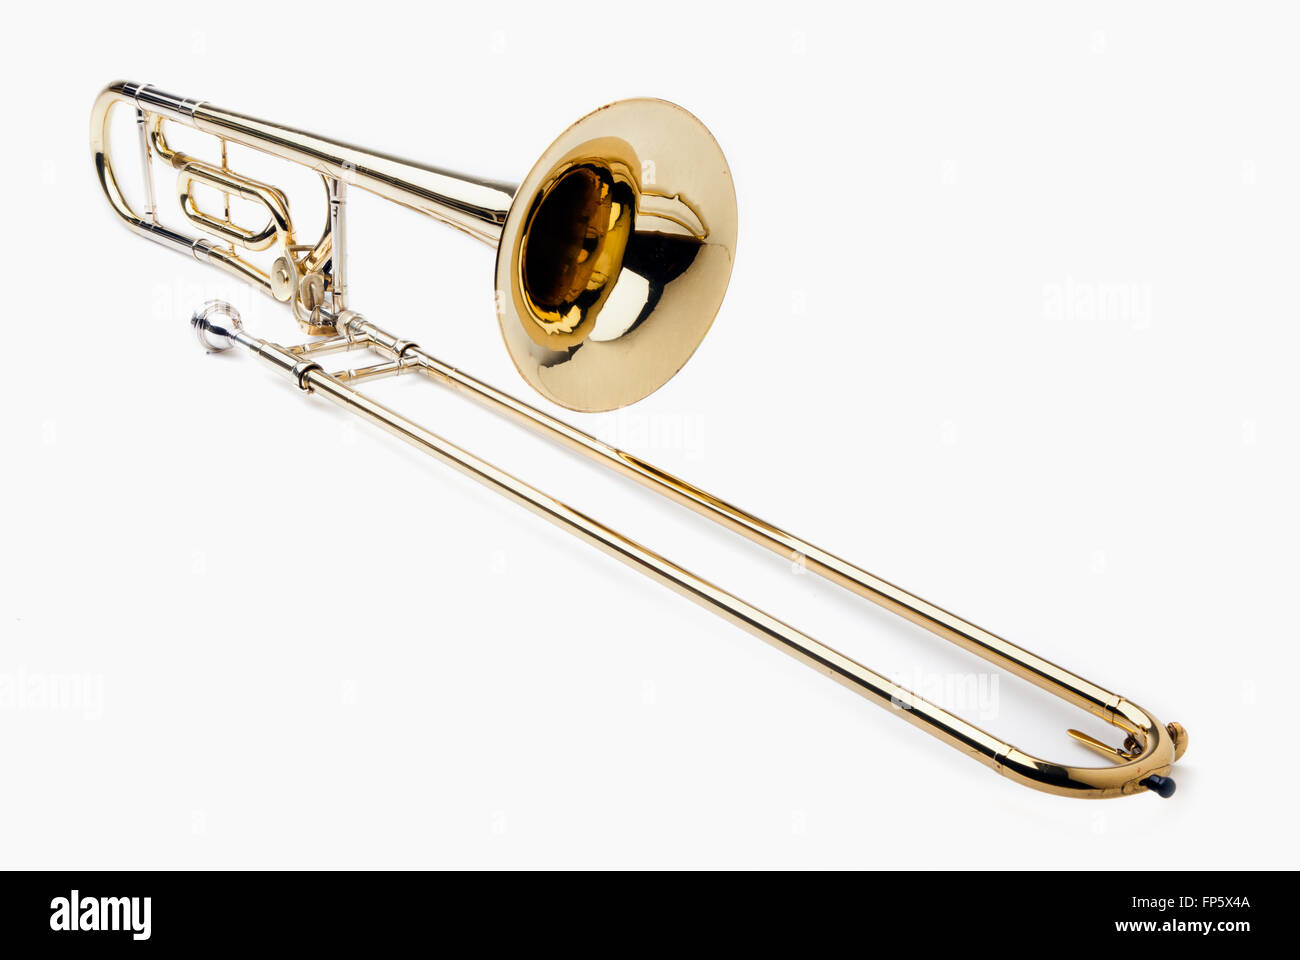 Faites glisser le trombone en cuivre isolé sur fond blanc Photo Stock -  Alamy